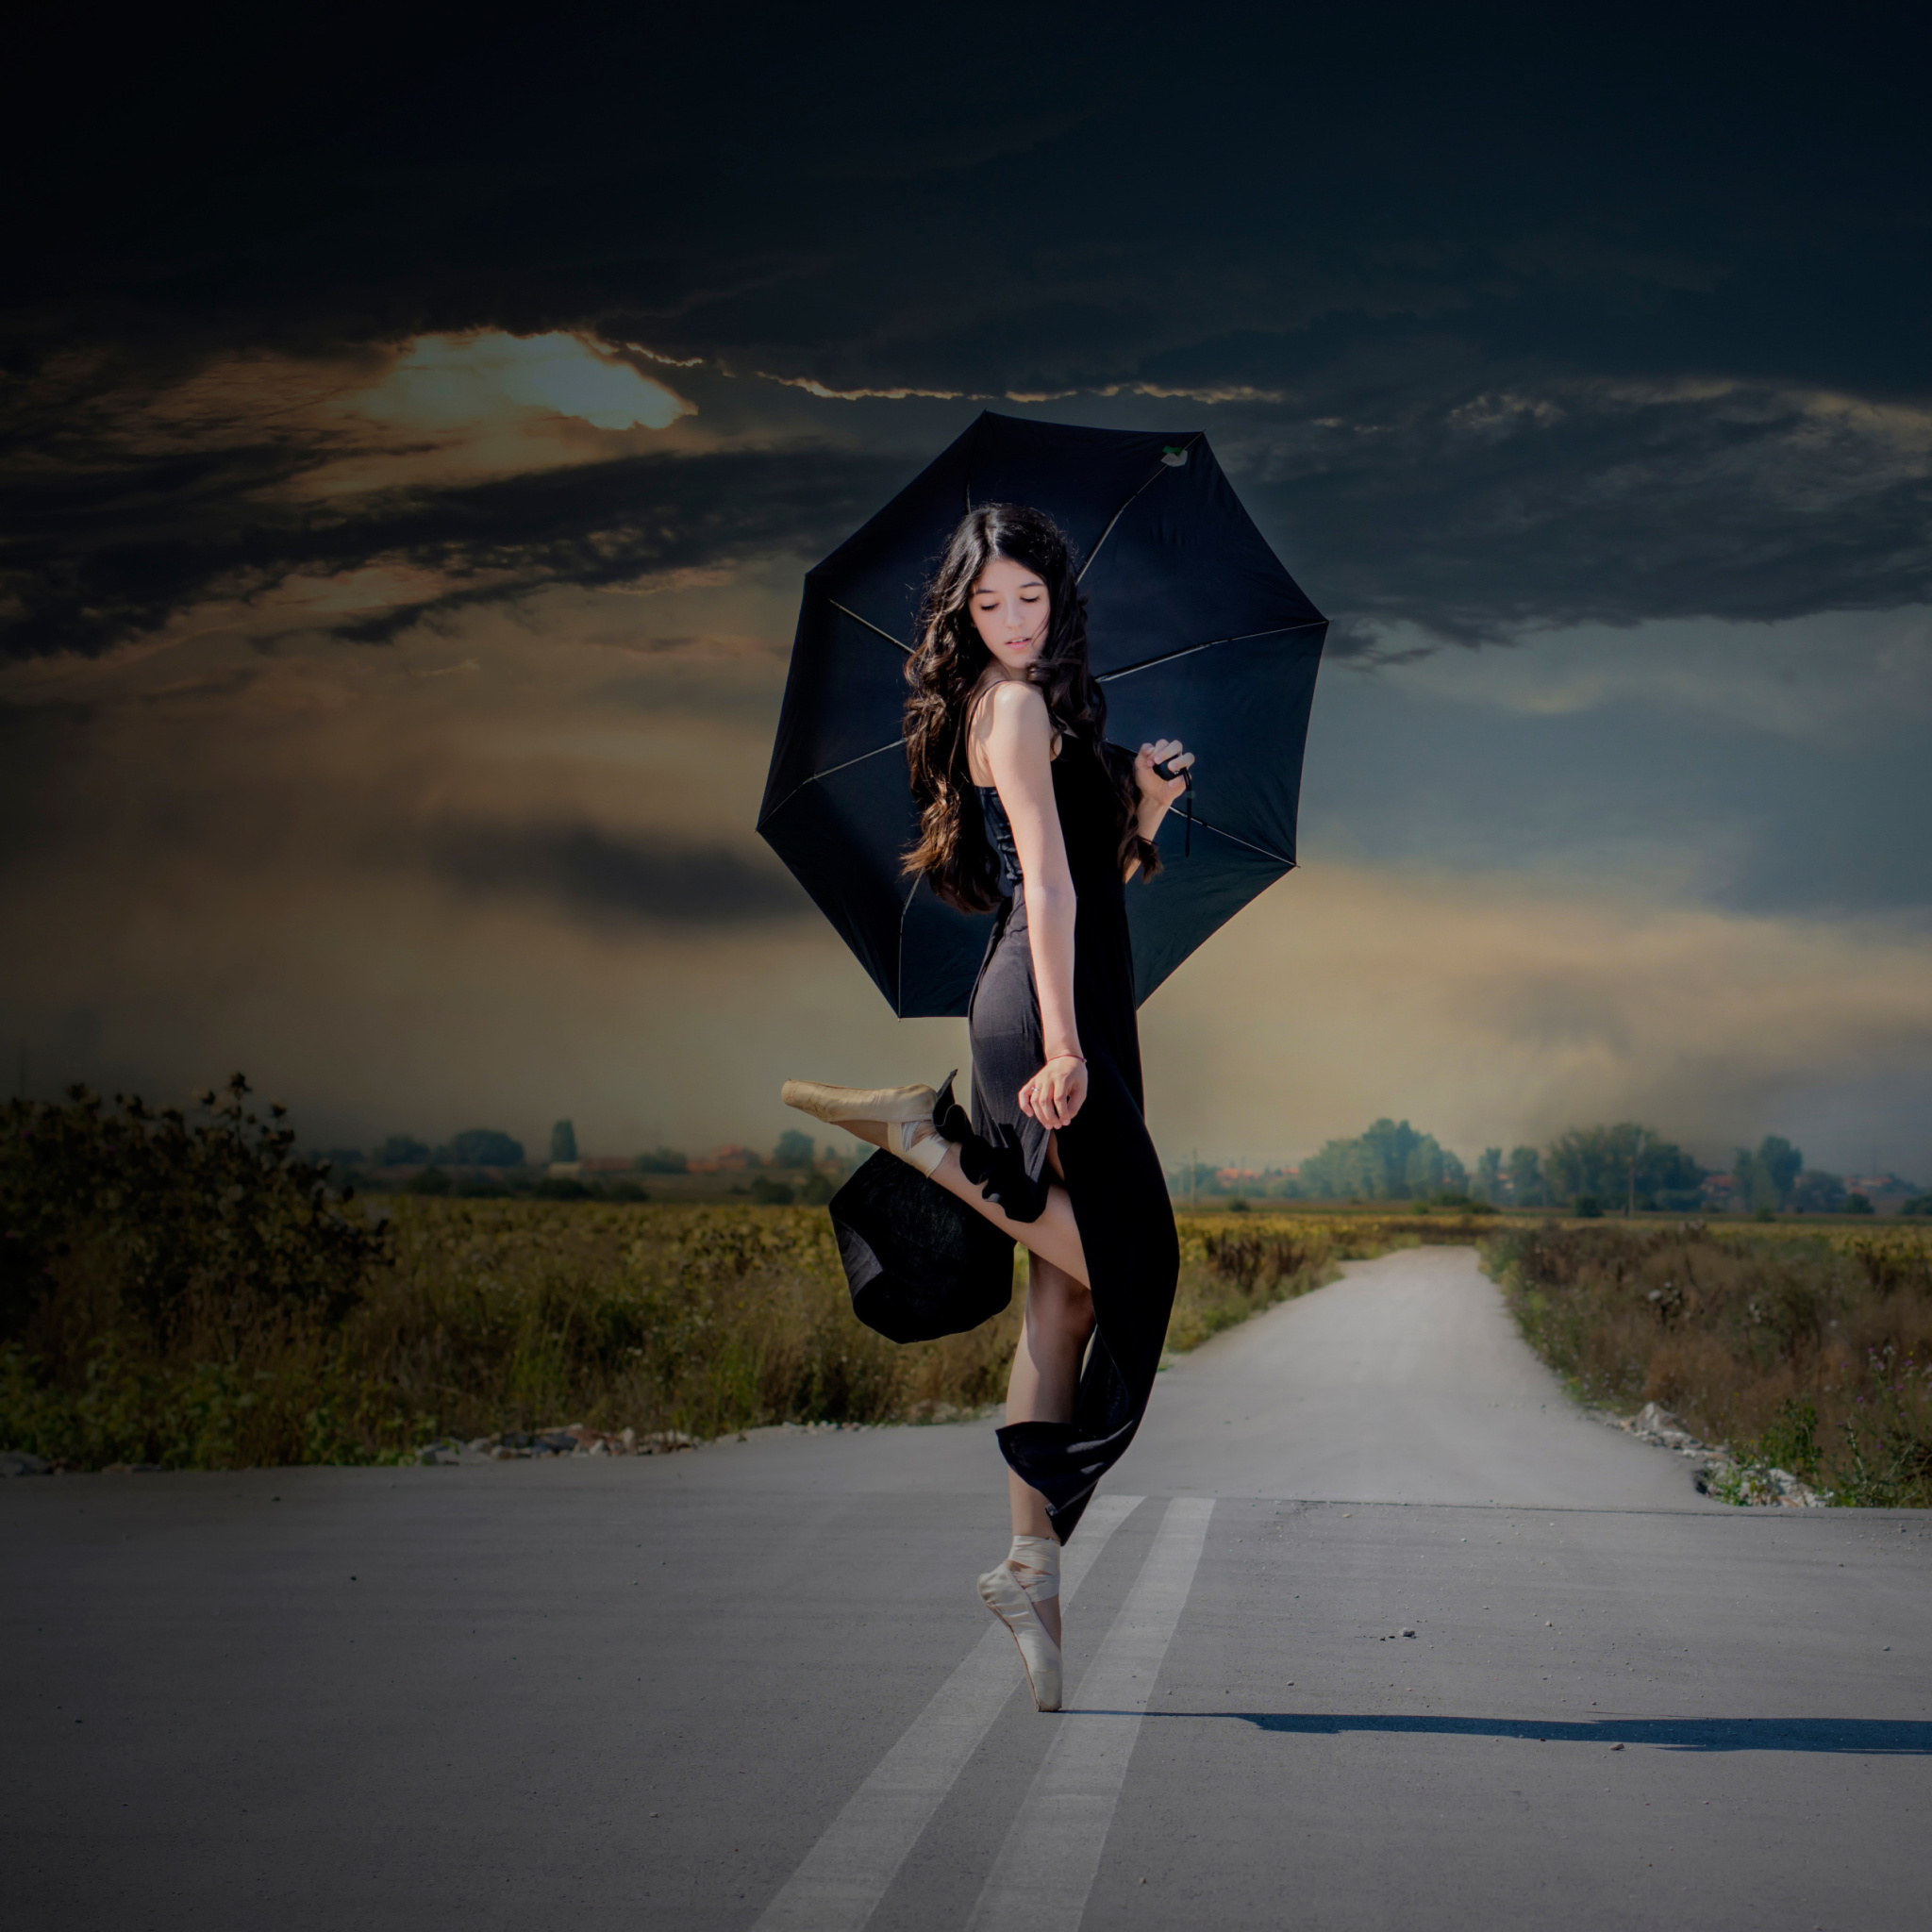 Das Ballerina with black umbrella Wallpaper 2048x2048